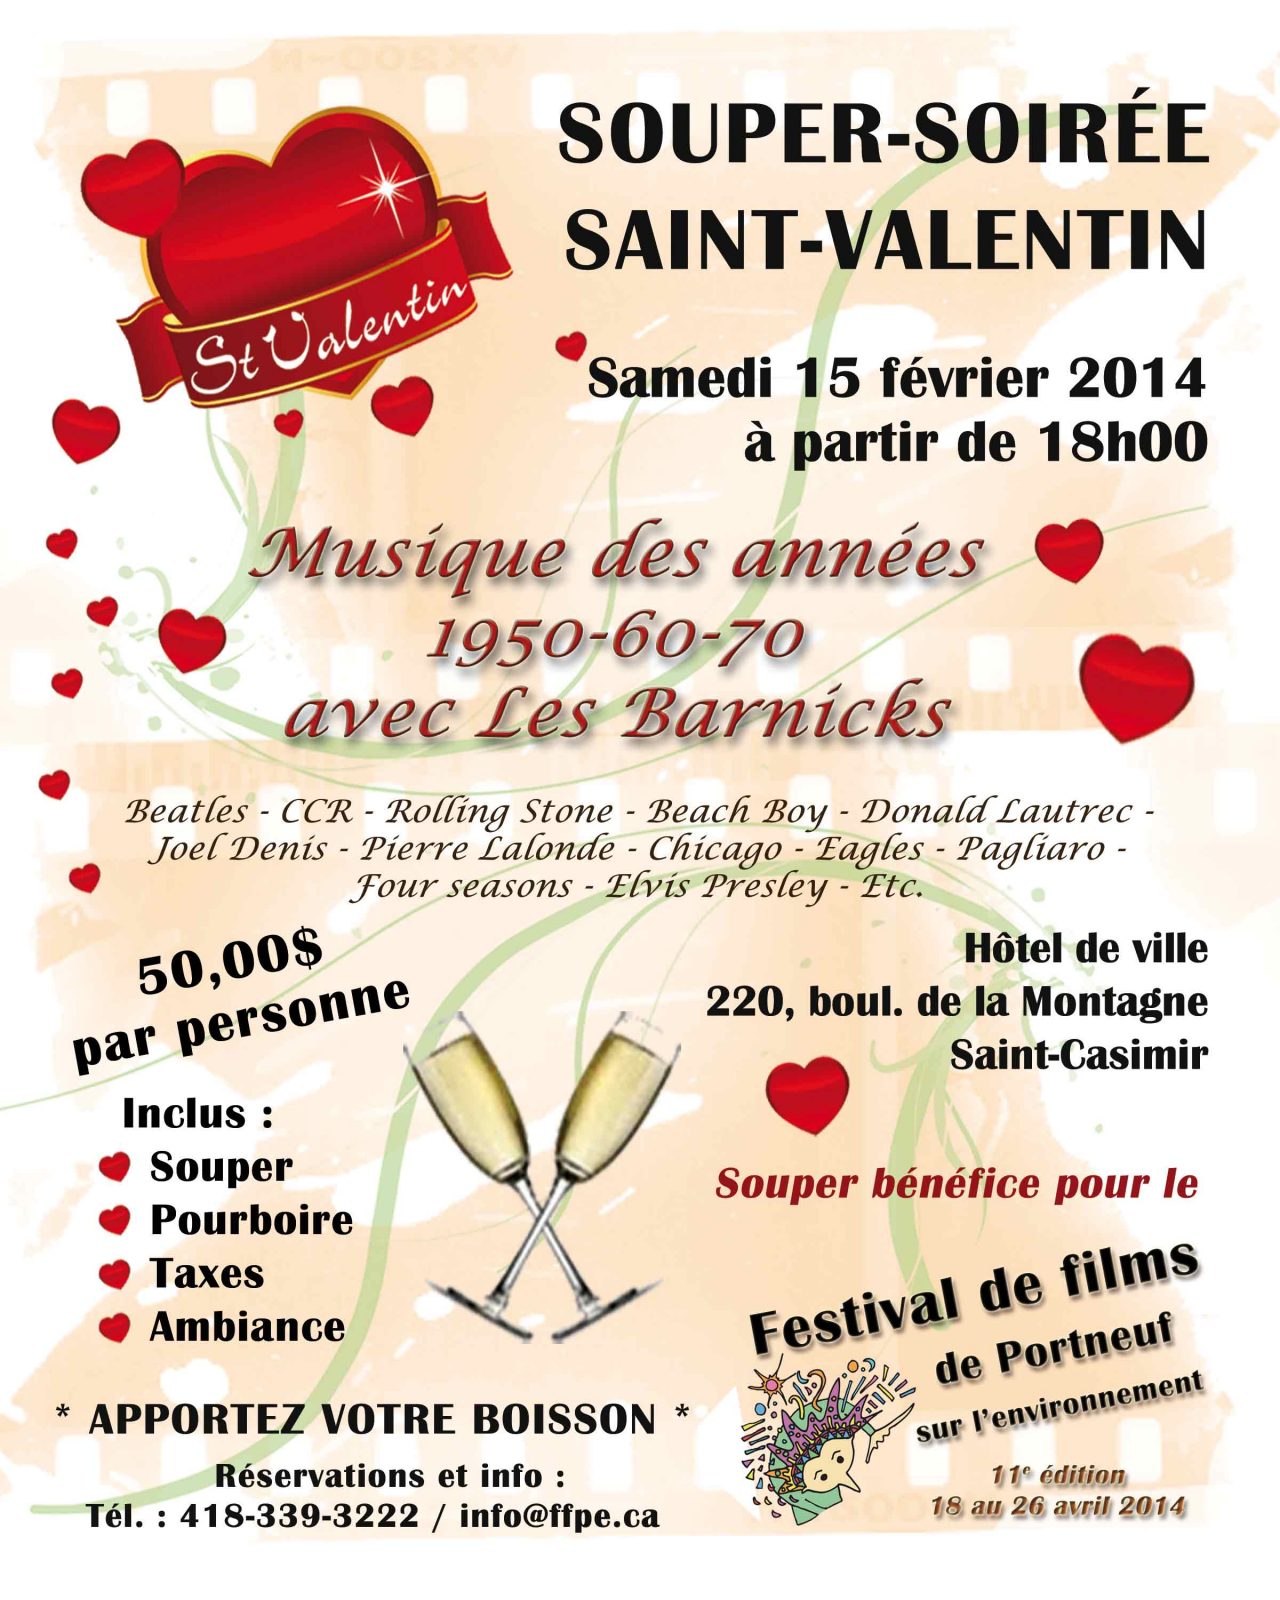 Souper soirée Saint-Valentin du FFPE à Saint-Casimir